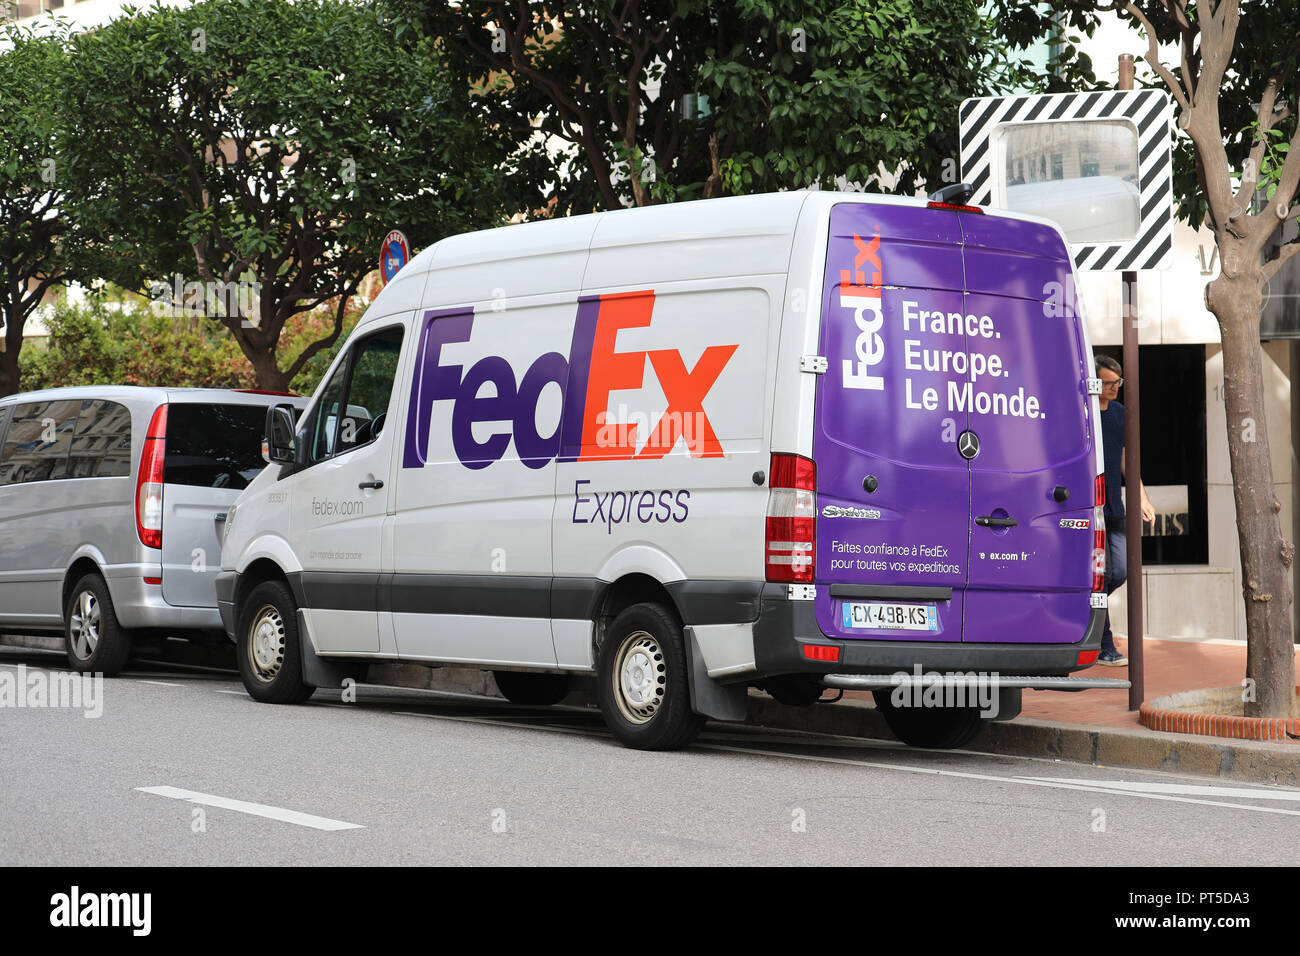 Monte Carlo, Monaco - 5. Oktober 2018: FedEx Delivery Truck (Transporter) auf der Straße in Monaco geparkt. FedEx Corporation ist eine US-amerikanische multinationale Couri Stockfoto